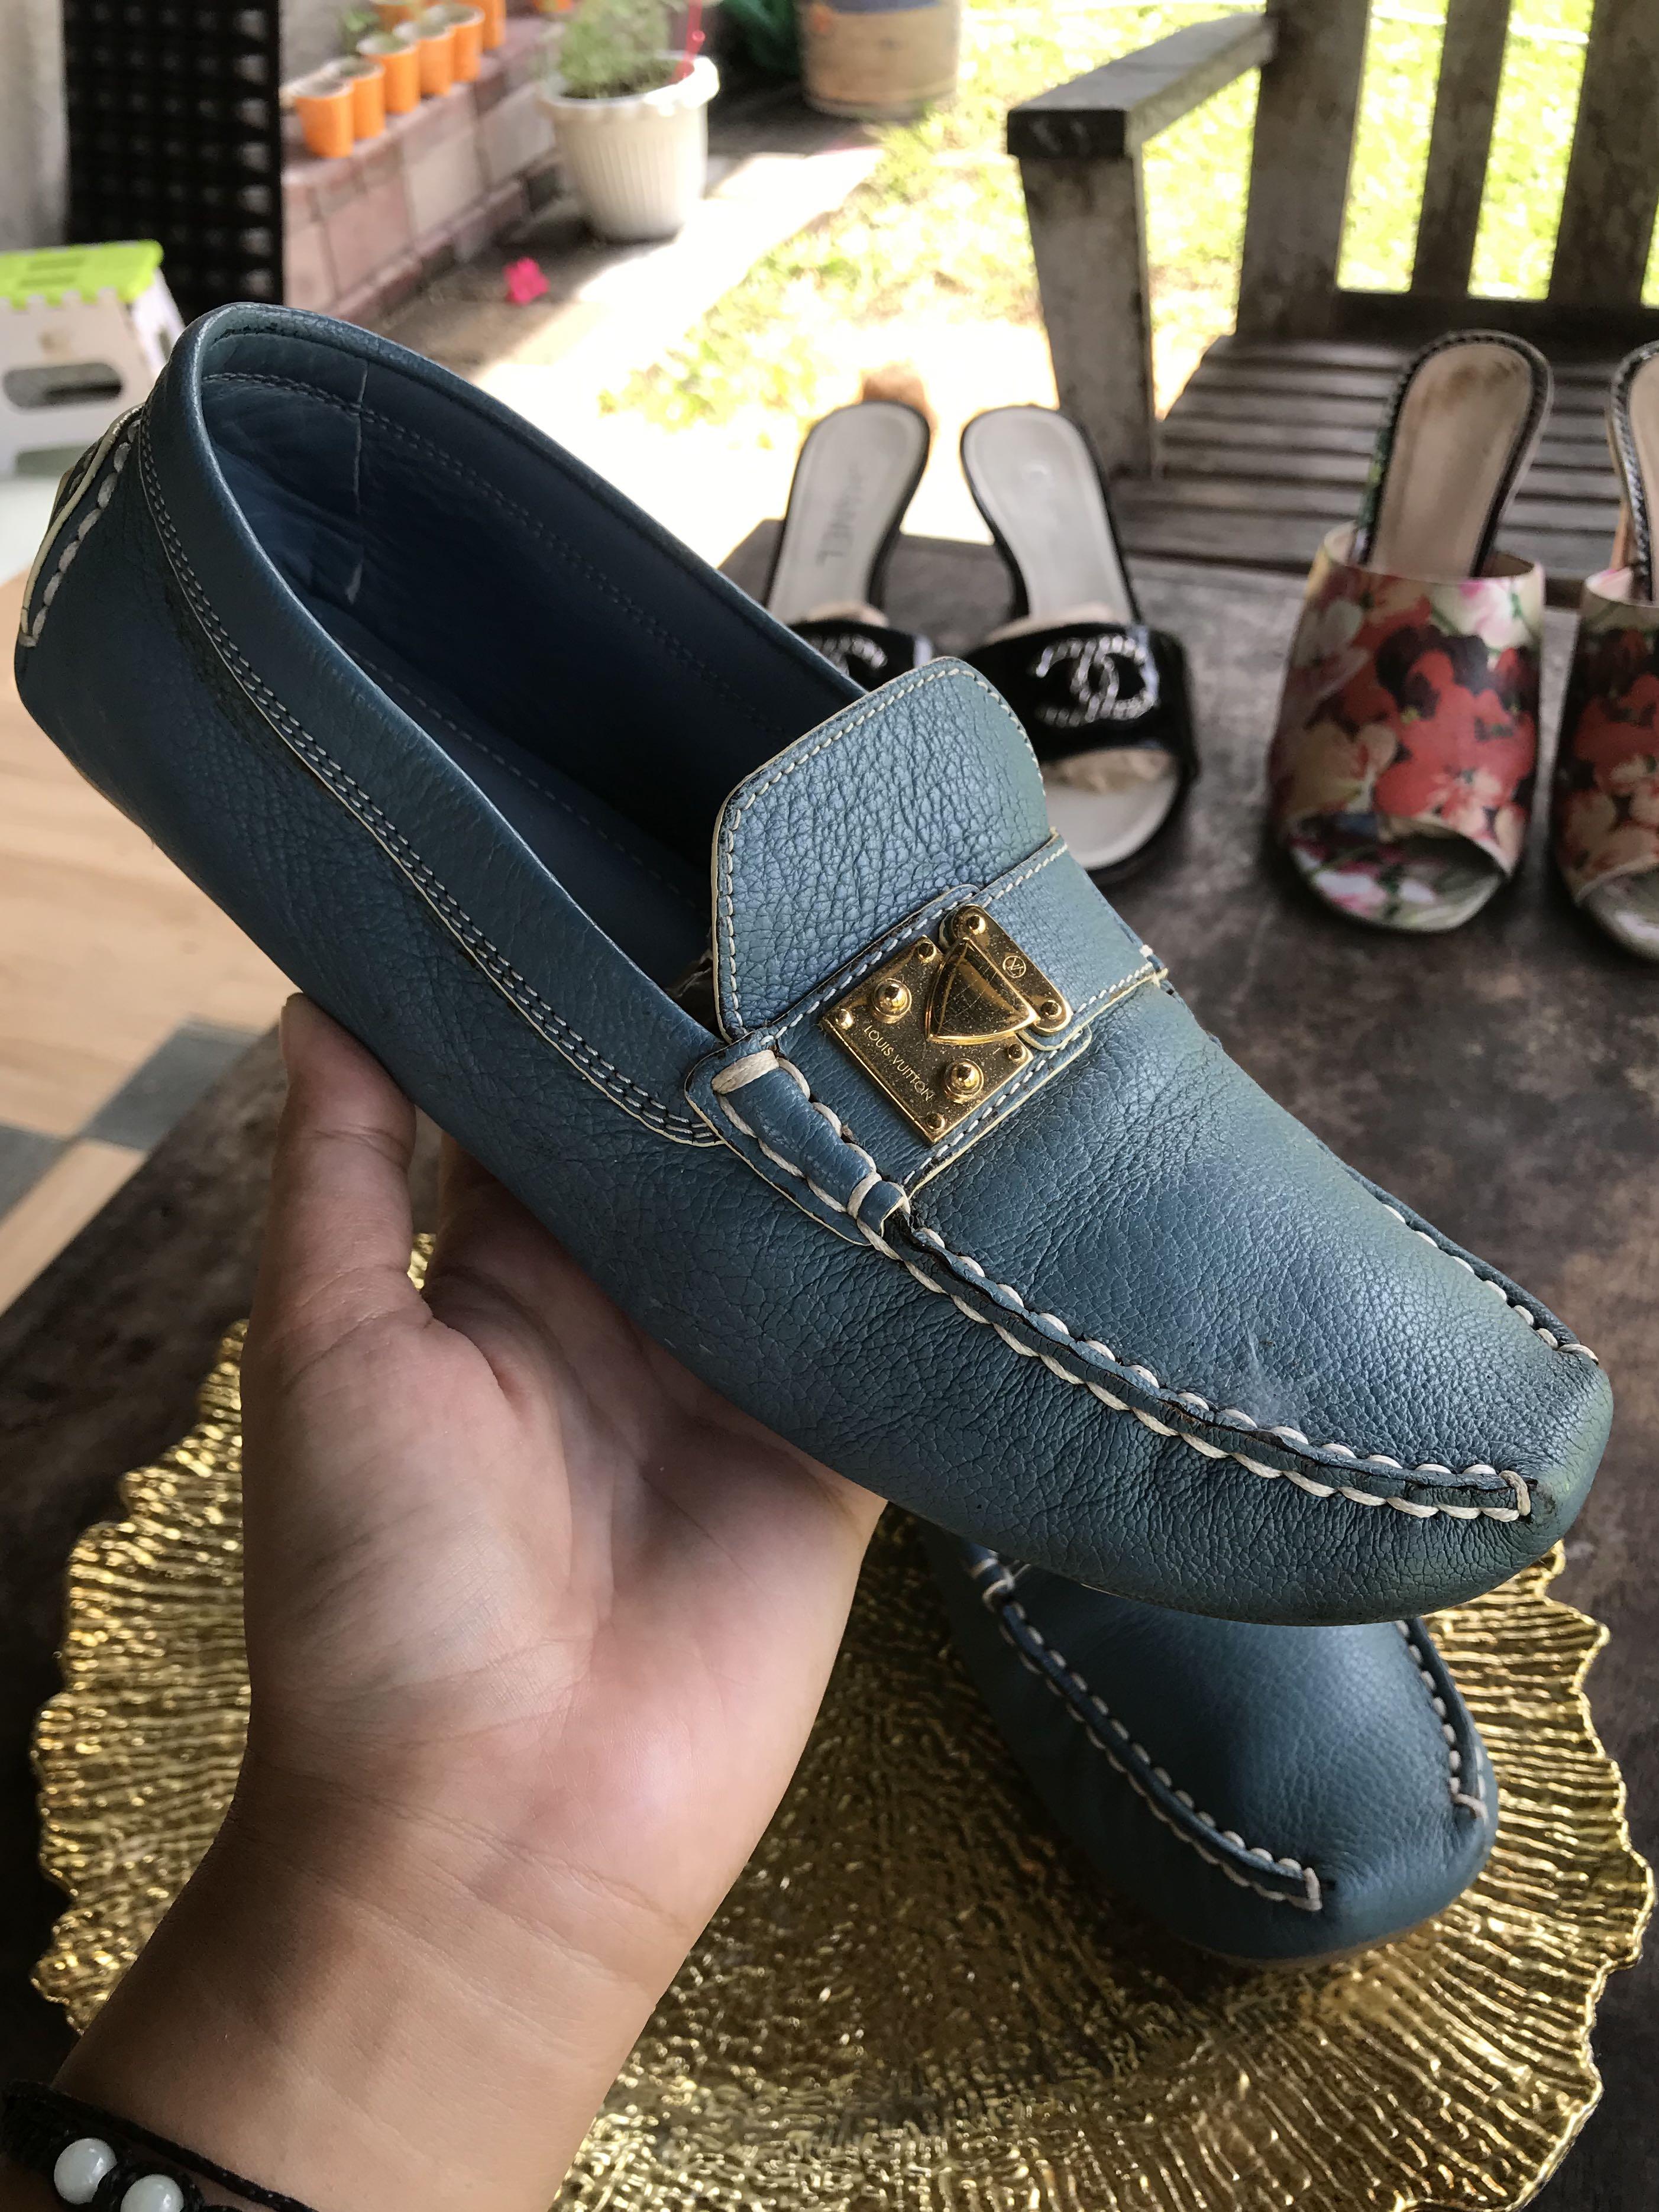 Louis Vuitton lv man shoes blue leather loafers high quality  Louis vuitton  loafers, Lv men shoes, Louis vuitton men shoes